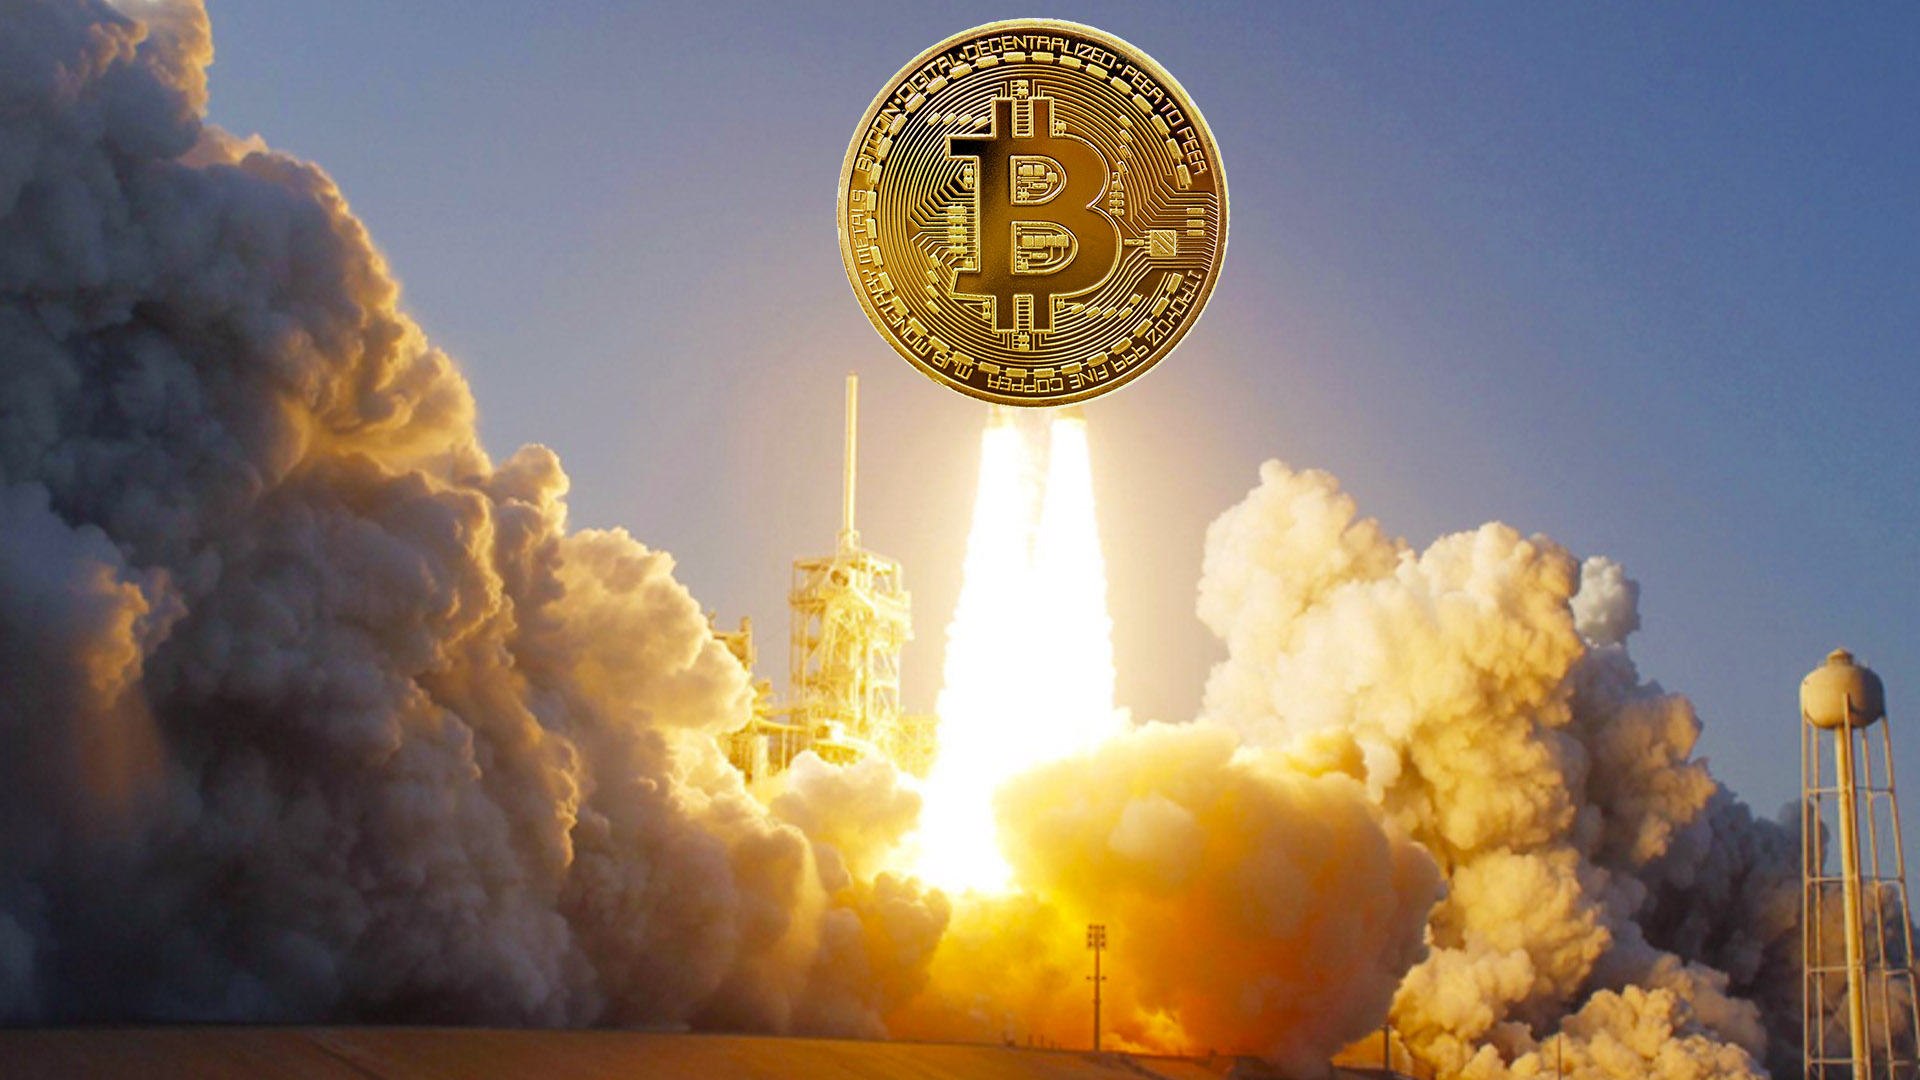 ‘Parabolically’*, Bitcoin can reach 333,000 USD